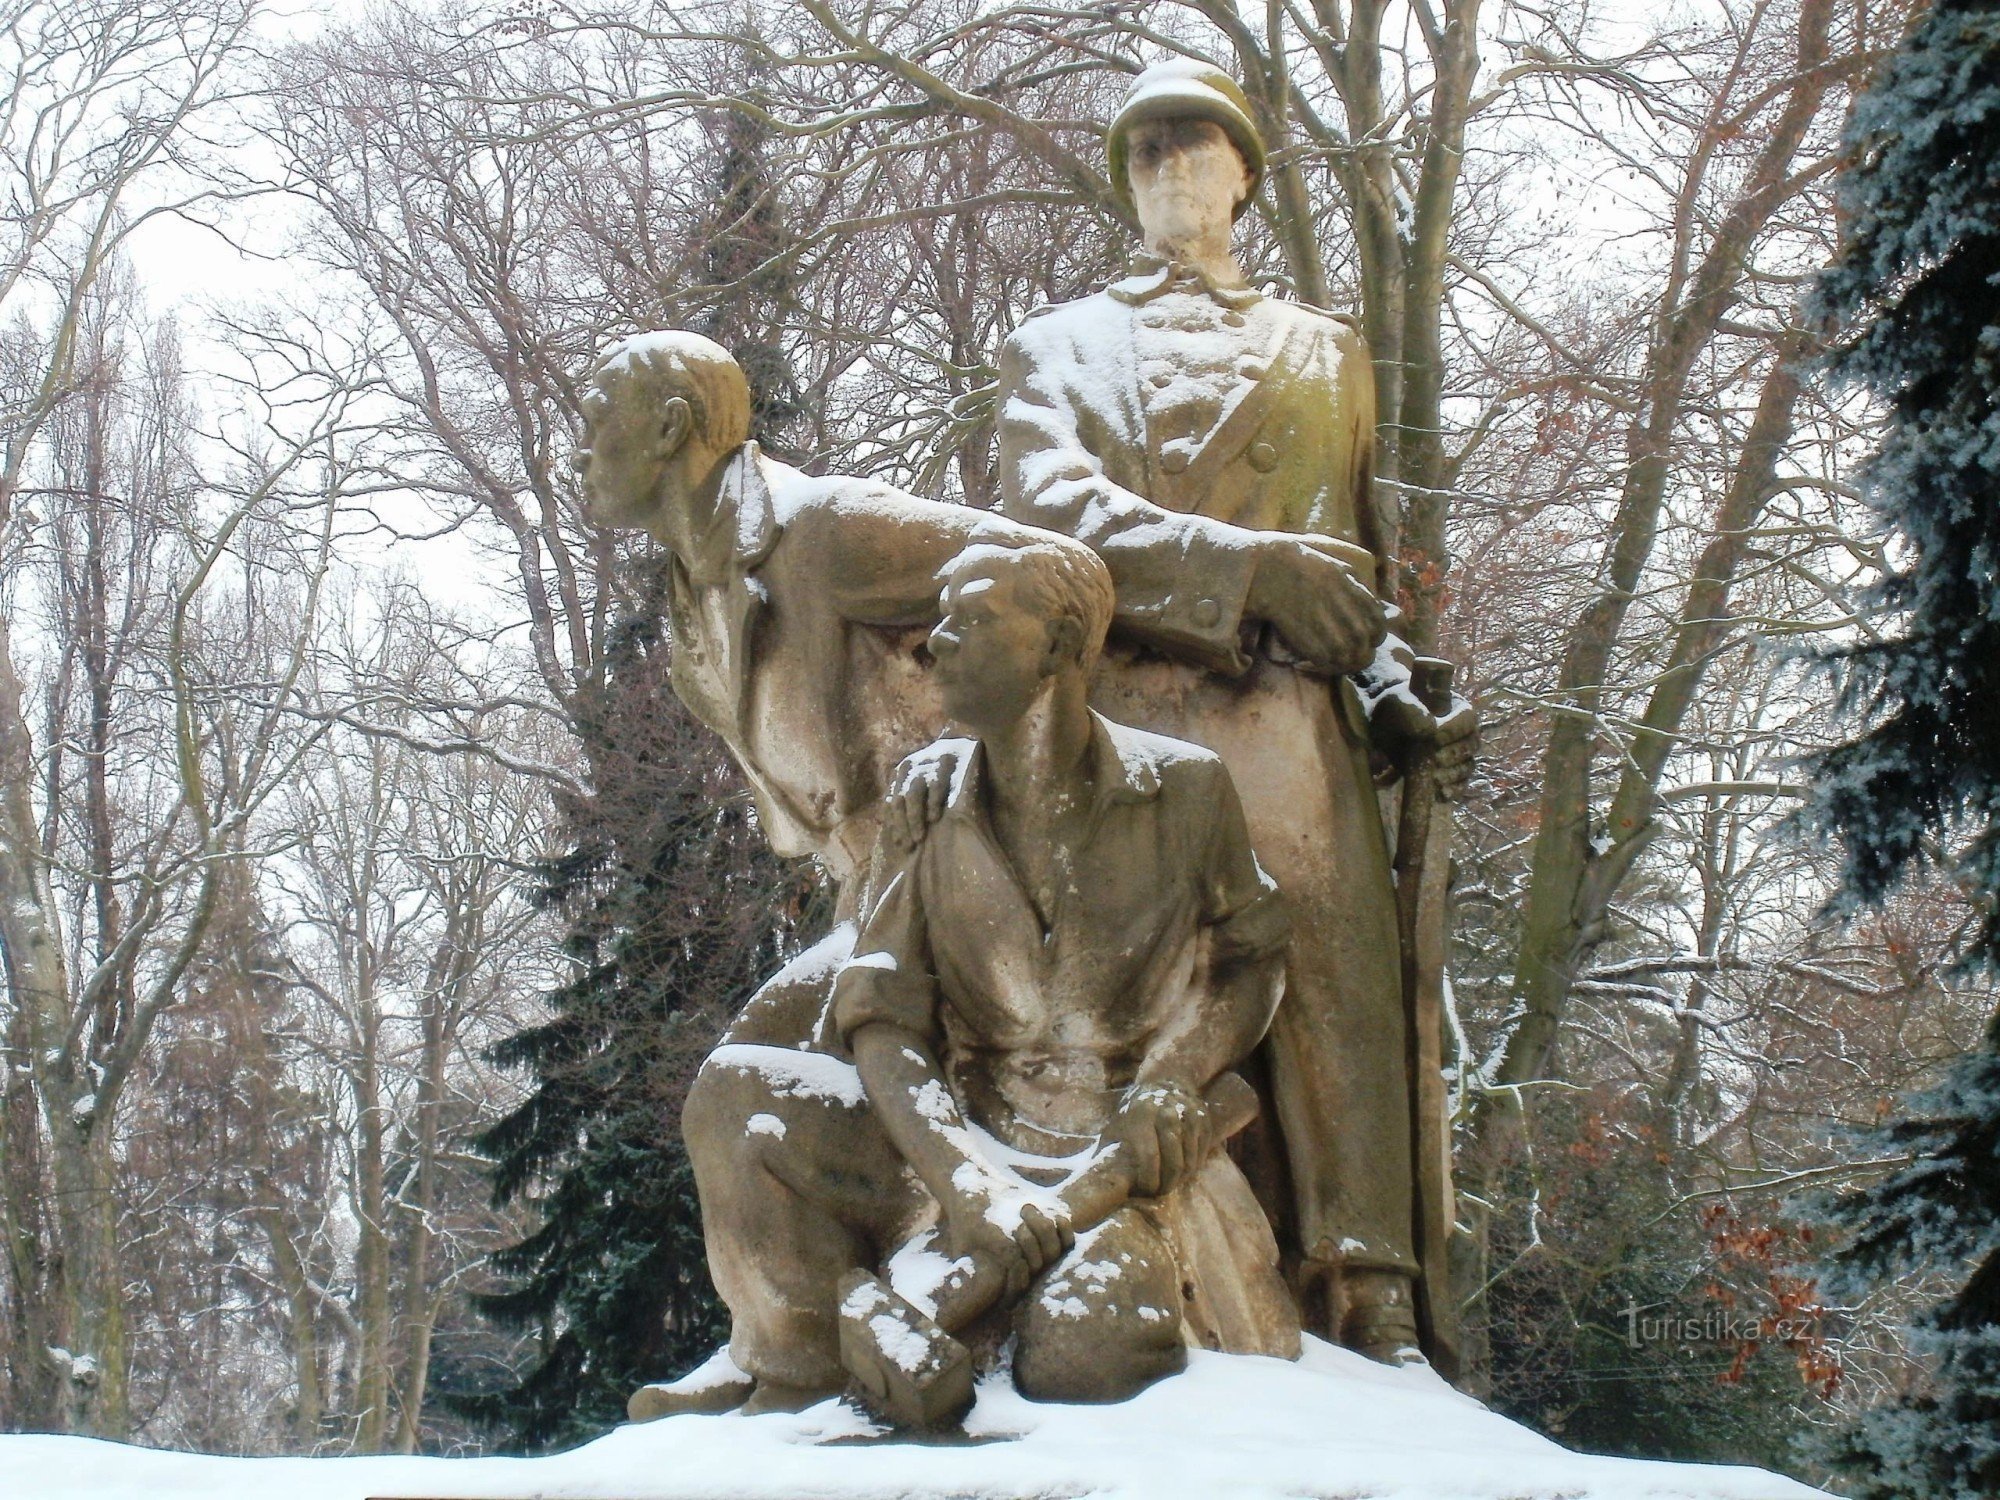 Smiřice - az ellenállás emlékműve és a 2. sz. háború